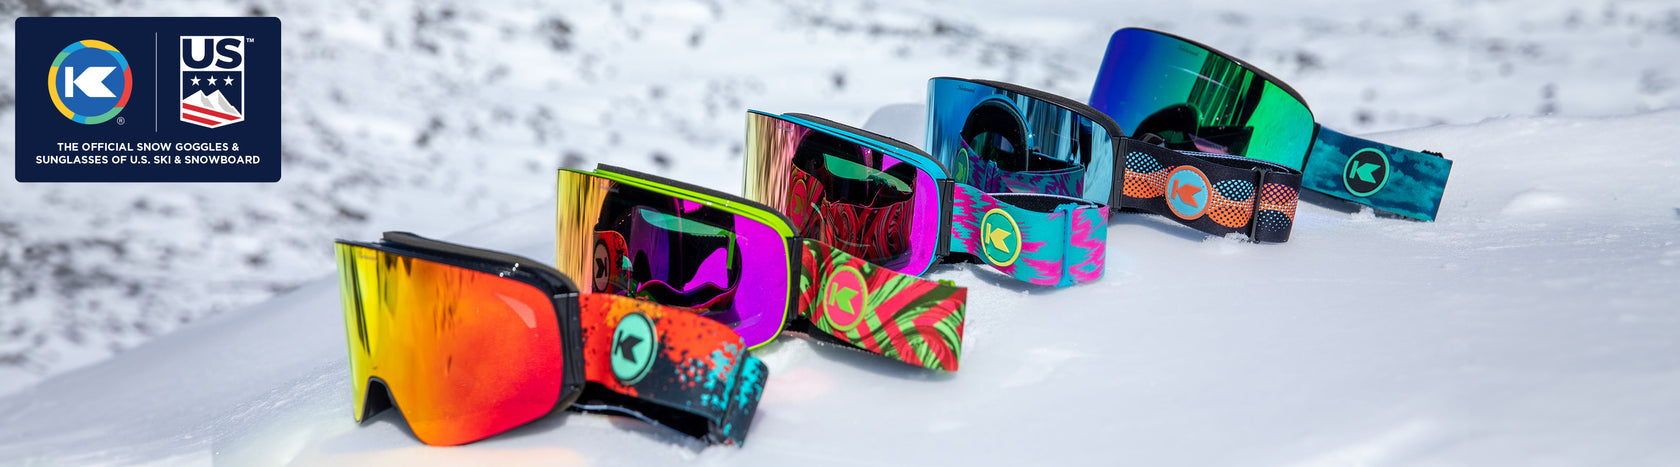 Dragon Men's Winter Sports Goggles & Sunglasses for sale